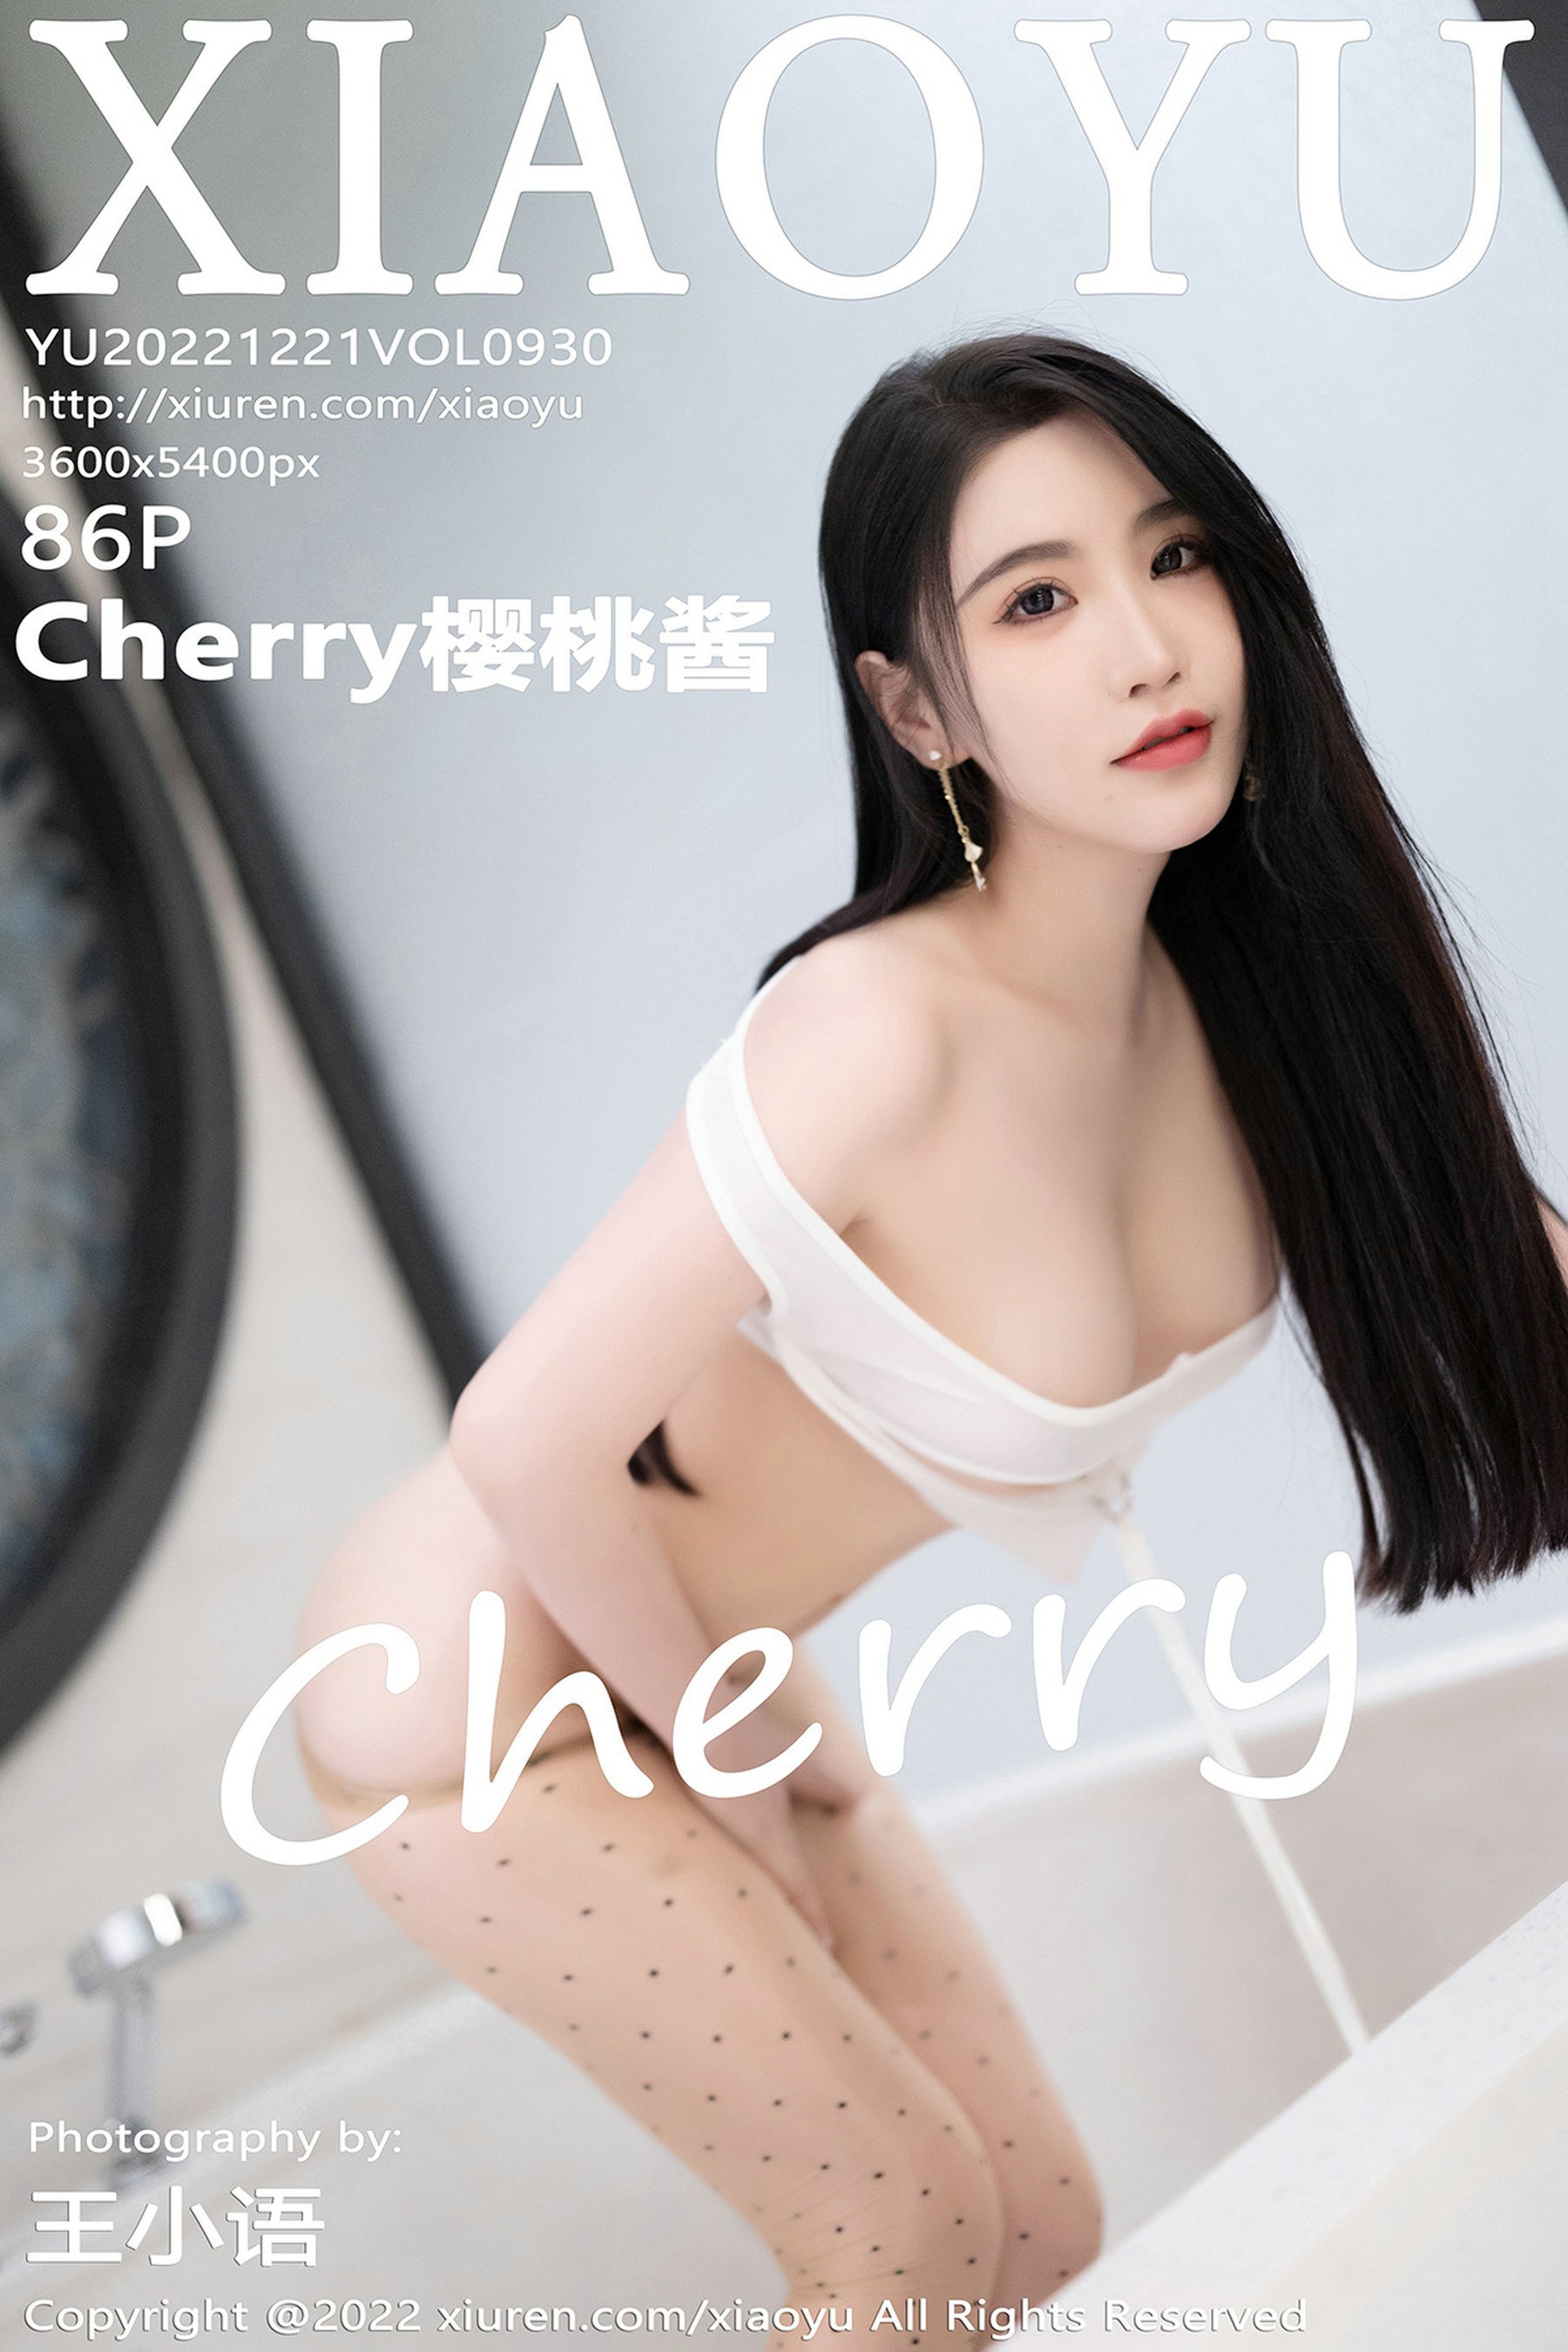 [语画界XIAOYU] Vol.930 Cherry樱桃酱  第5张